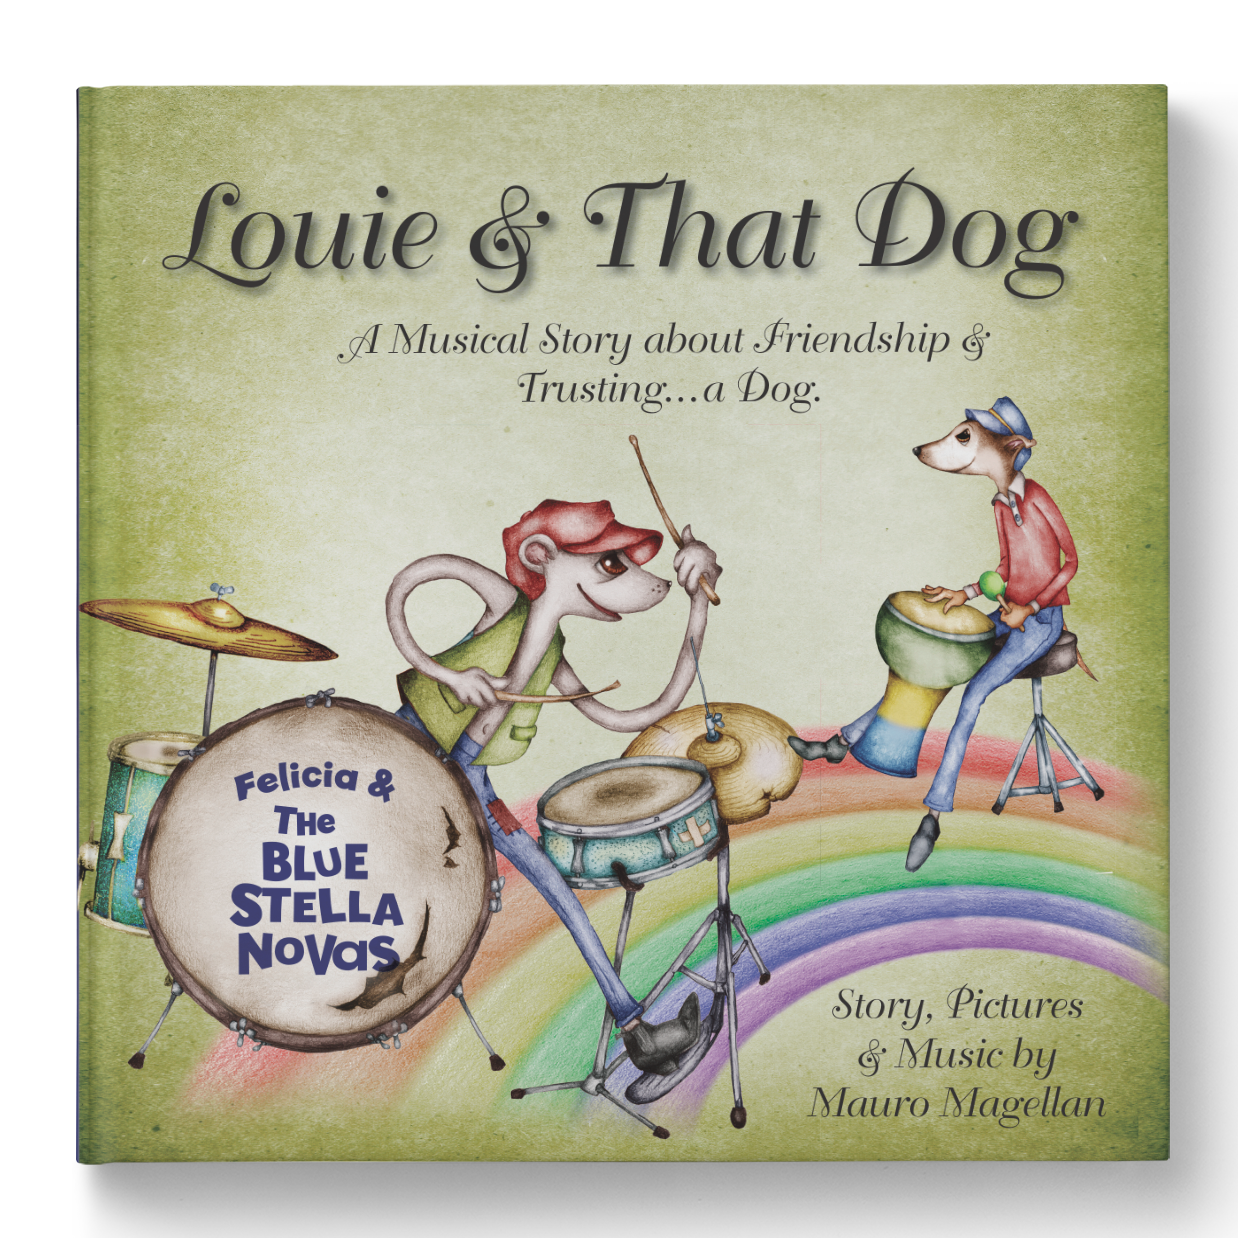 Louie & That Dog (book & music)